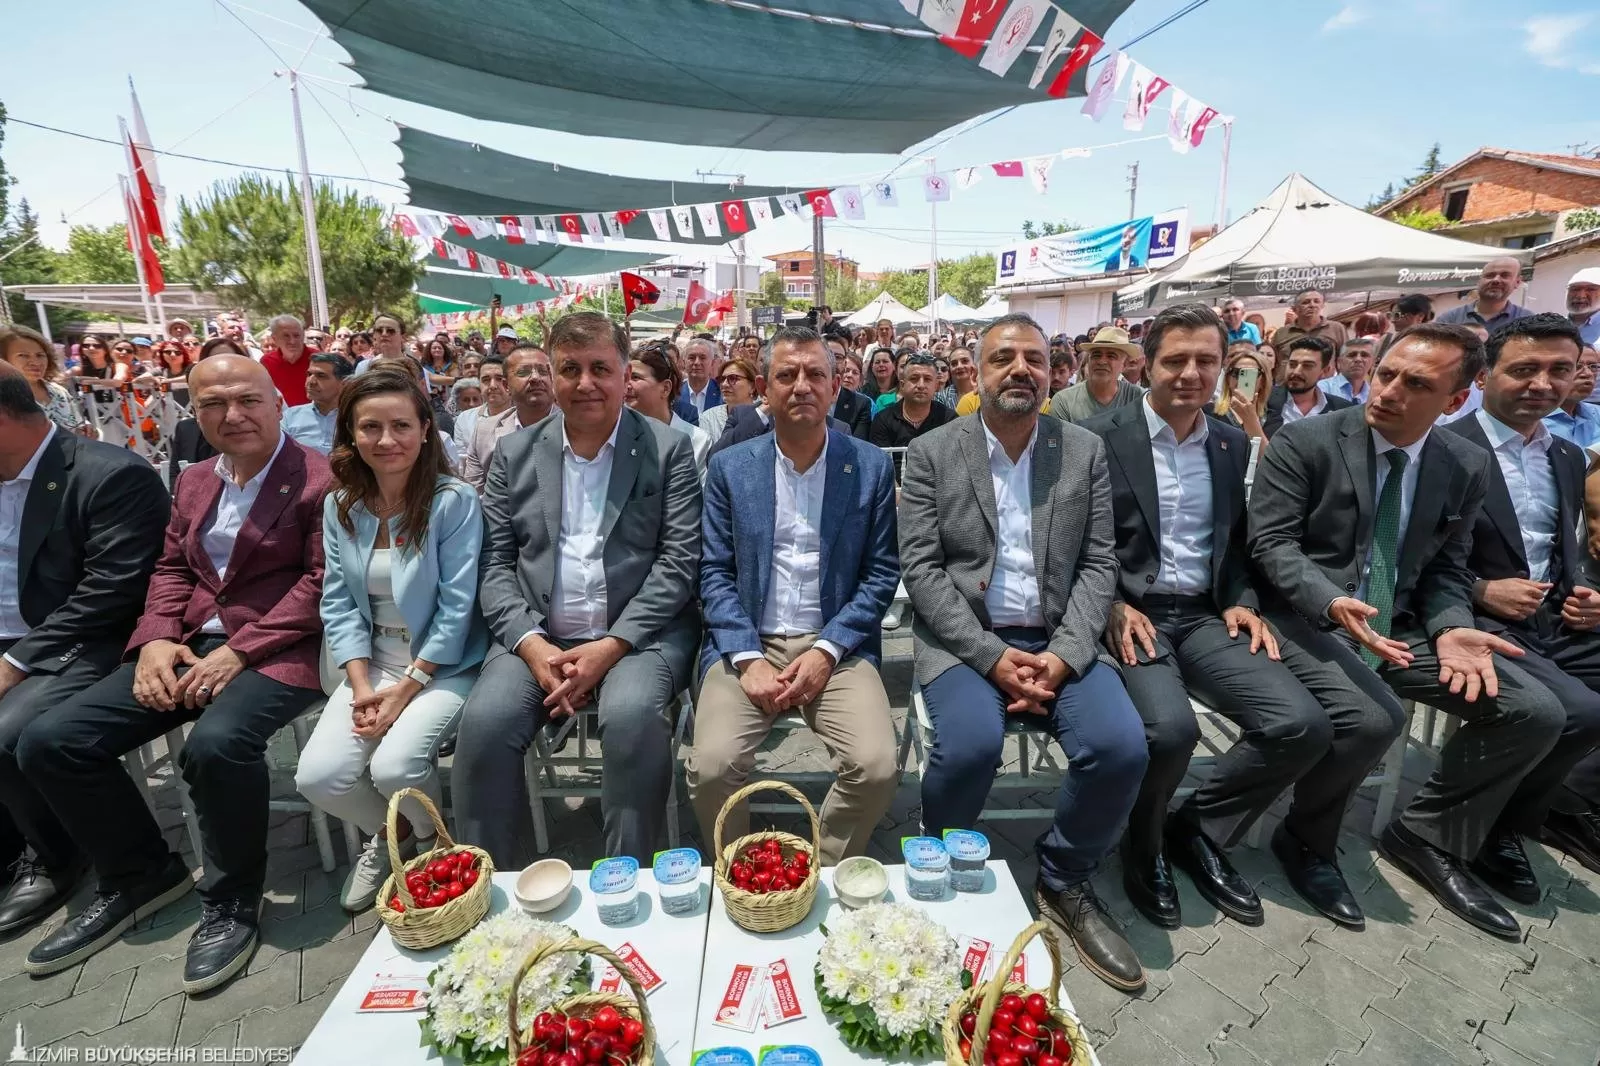 Bornova Belediyesi'nin Beşyol Mahallesi'nde düzenlediği 7. Kiraz Festivali, CHP Genel Başkanı Özgür Özel ve İzmir Büyükşehir Belediye Başkanı Dr. Cemil Tugay'ın katılımıyla büyük bir coşkuyla kutlandı